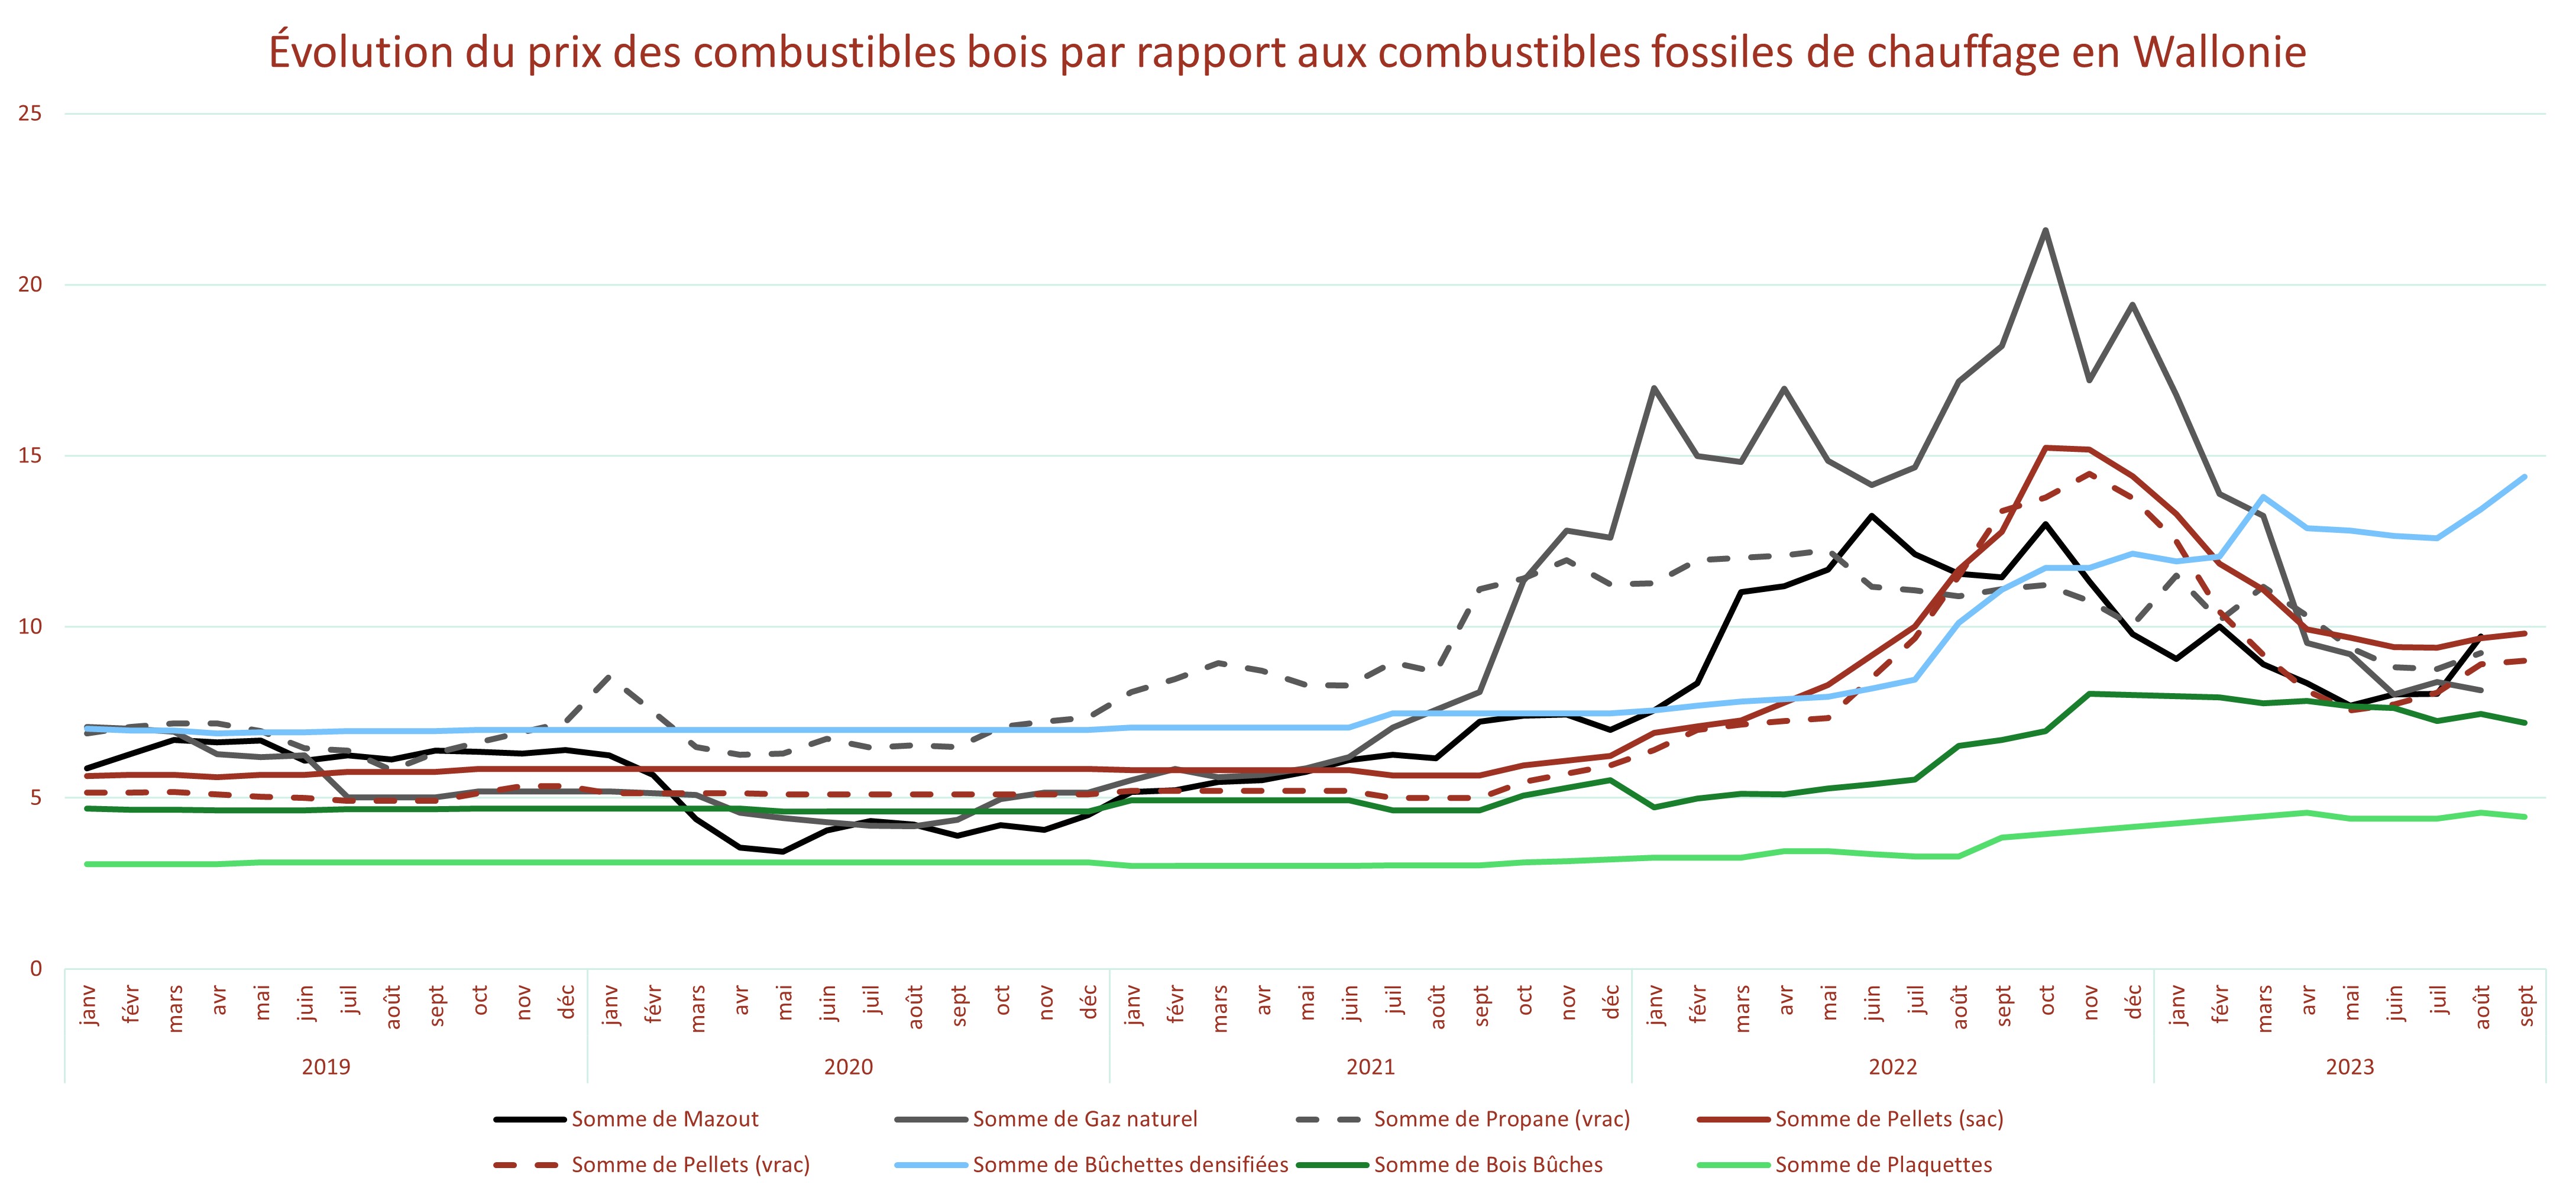 Évolution du prix des combustibles bois par rapport aux combustibles fossiles de chauffage en Wallonie